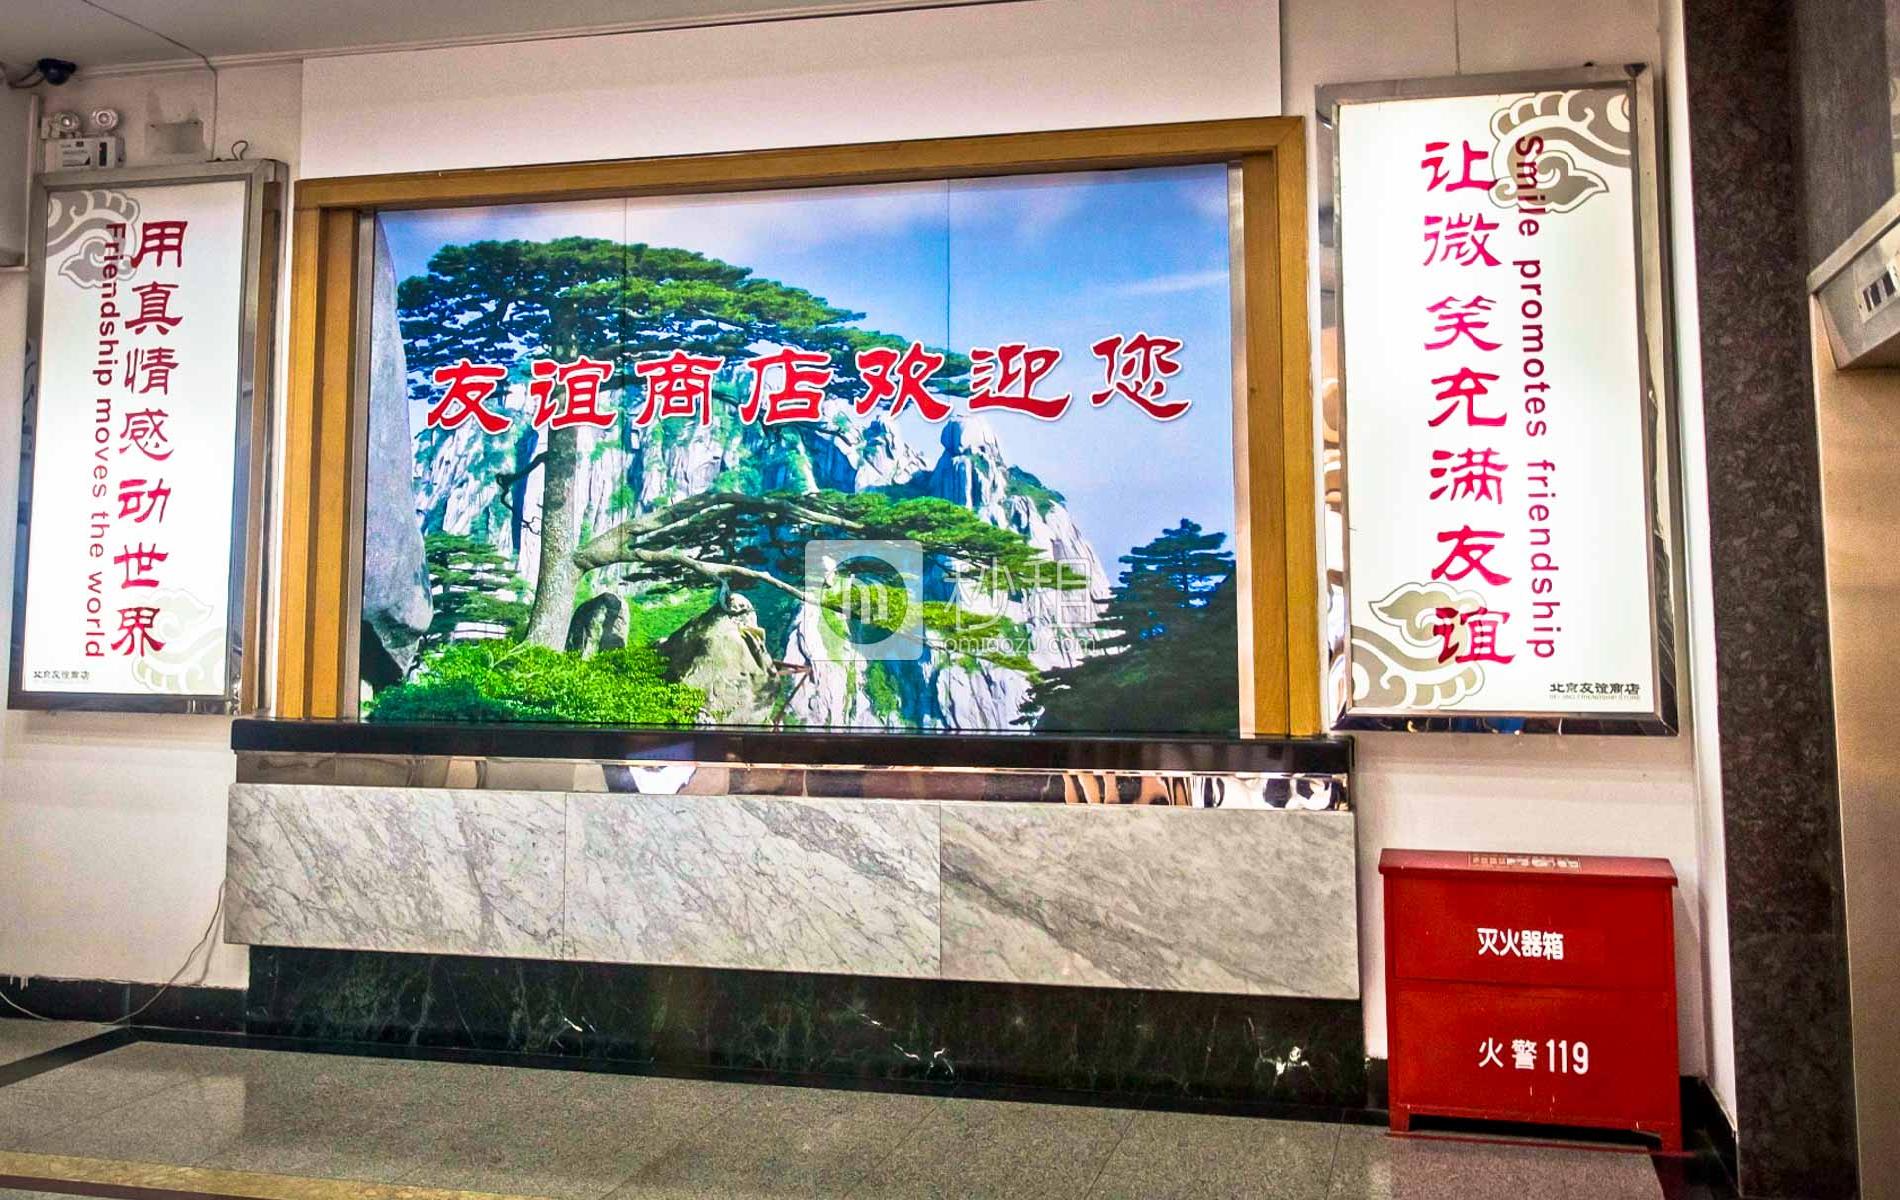 北京友谊商店